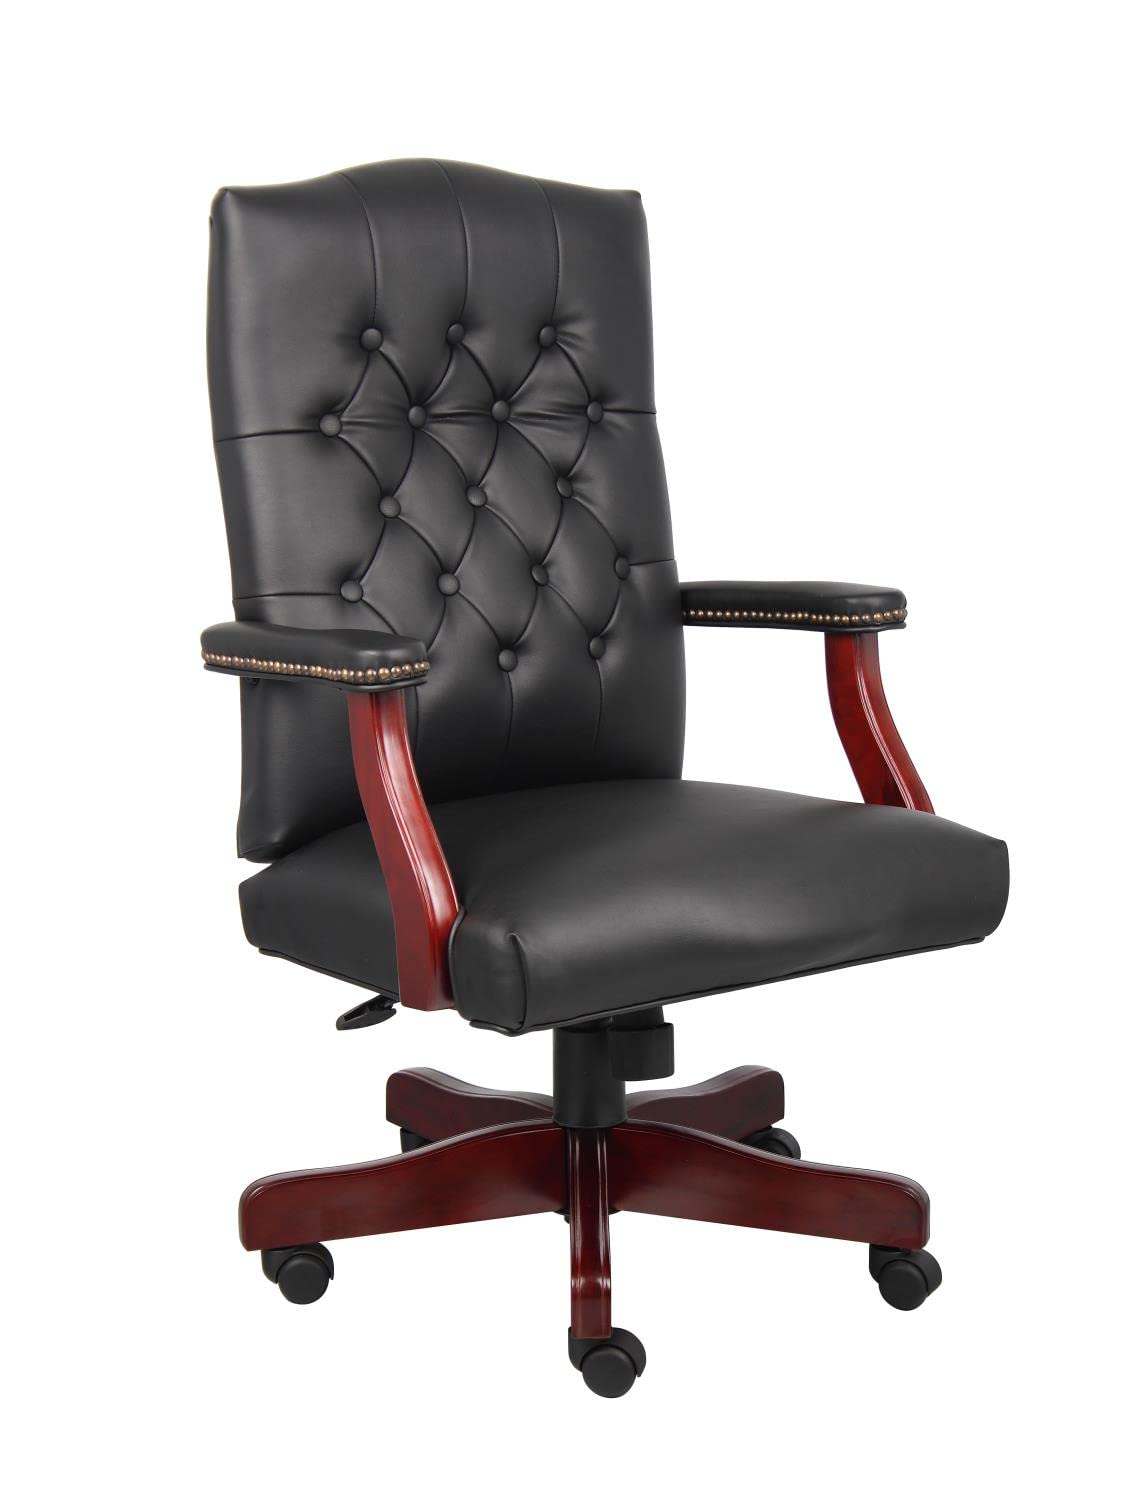 Boss Office Products Produkty biurowe Klasyczne krzesło Executive Caressoft z mahoniowym wykończeniem w kolorze czarnym